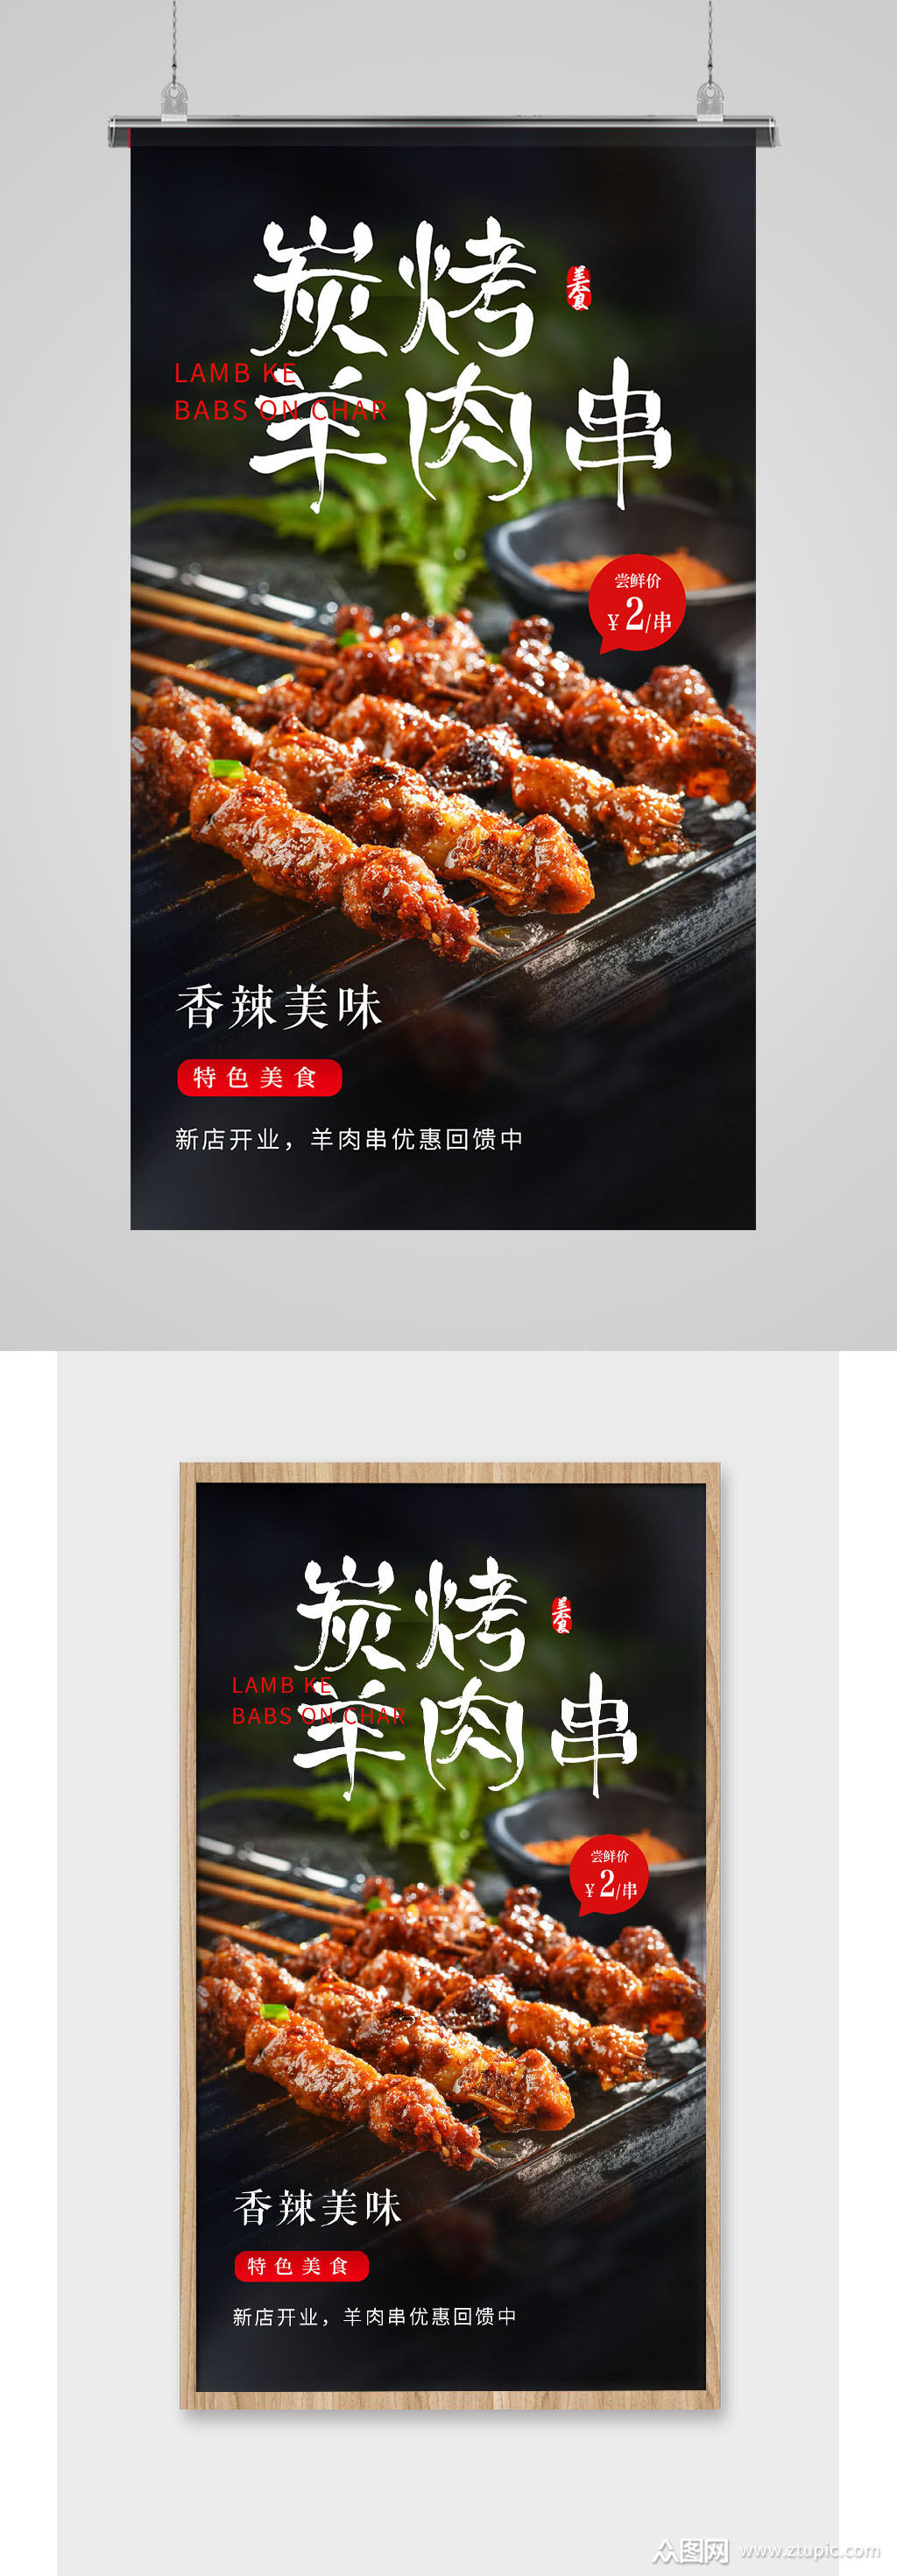 简约碳烤羊肉串烧烤宣传促销海报